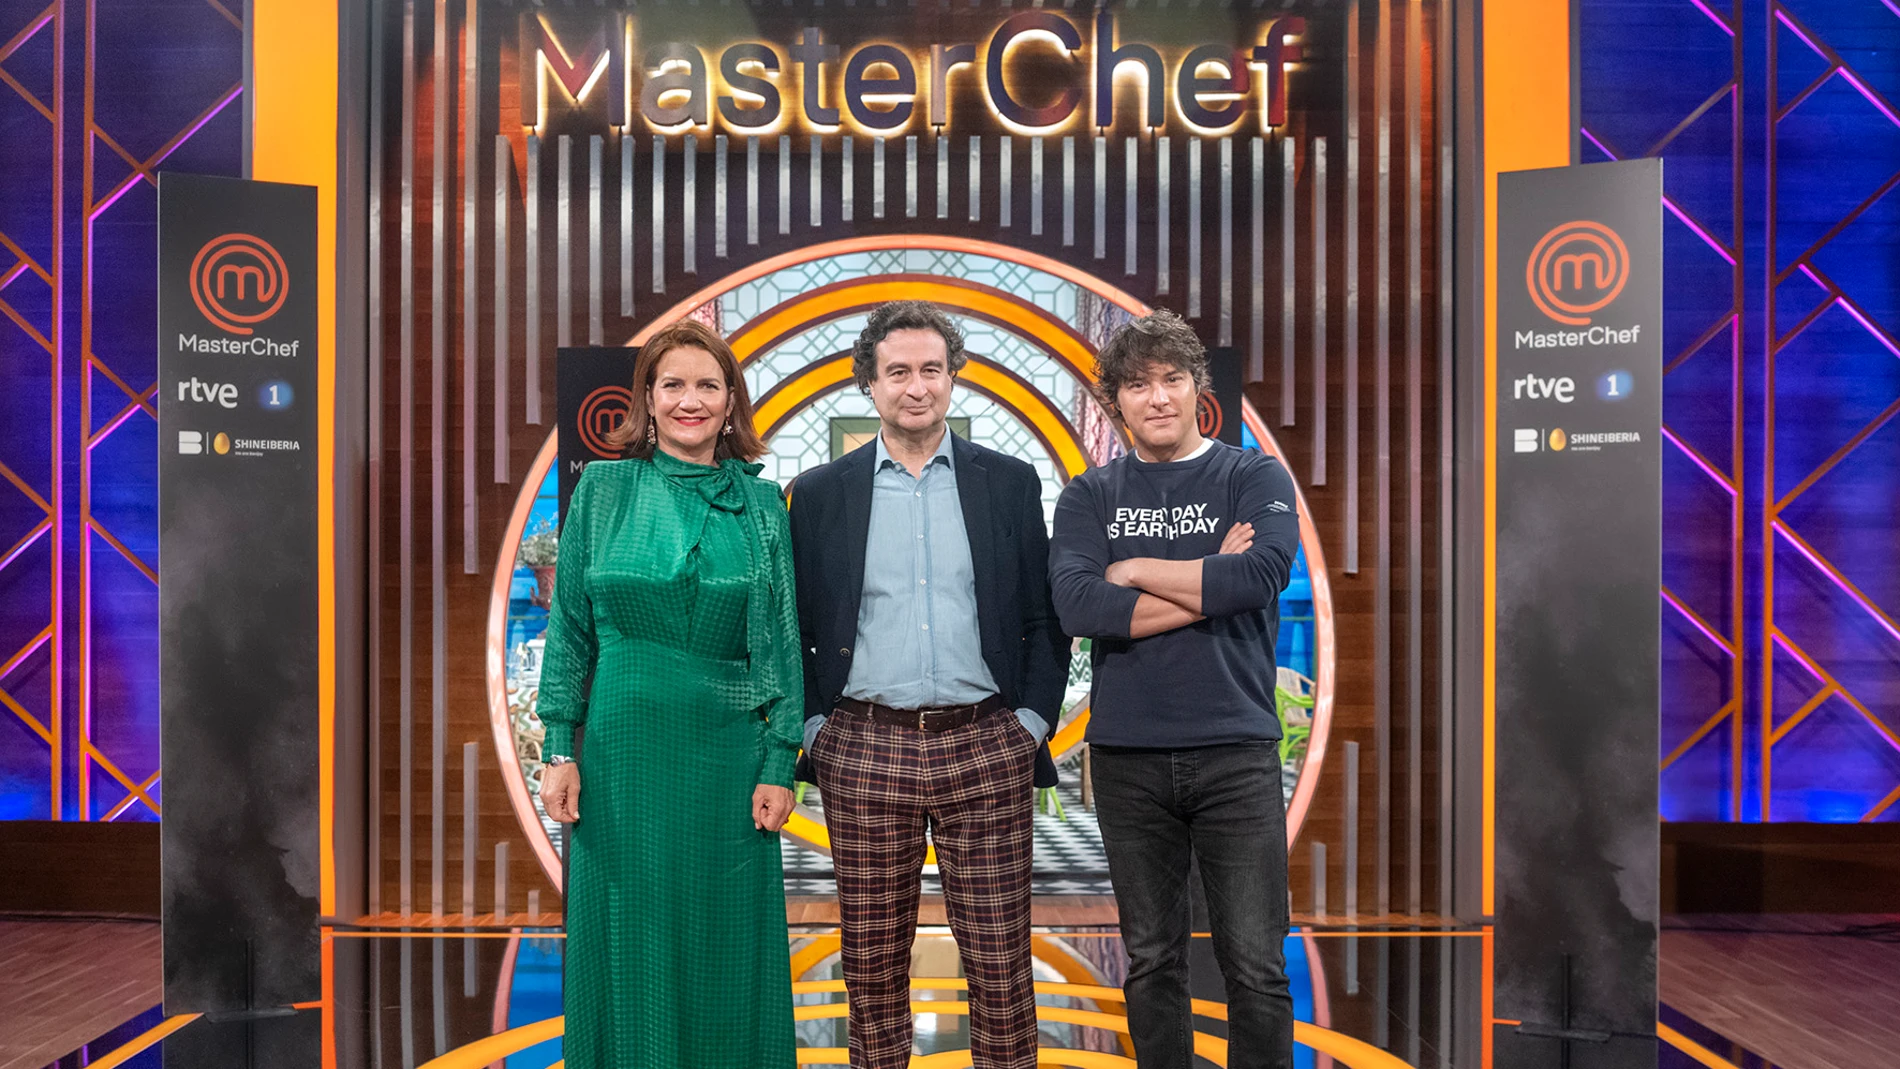 Los chefs Samantha Vallejo-Nágera, Pepe Rodríguez y Jordi Cruz, posan durante la presentación de la undécima edición del programa ‘Masterchefí, en los estudios de televisión de Fuente El Saz.